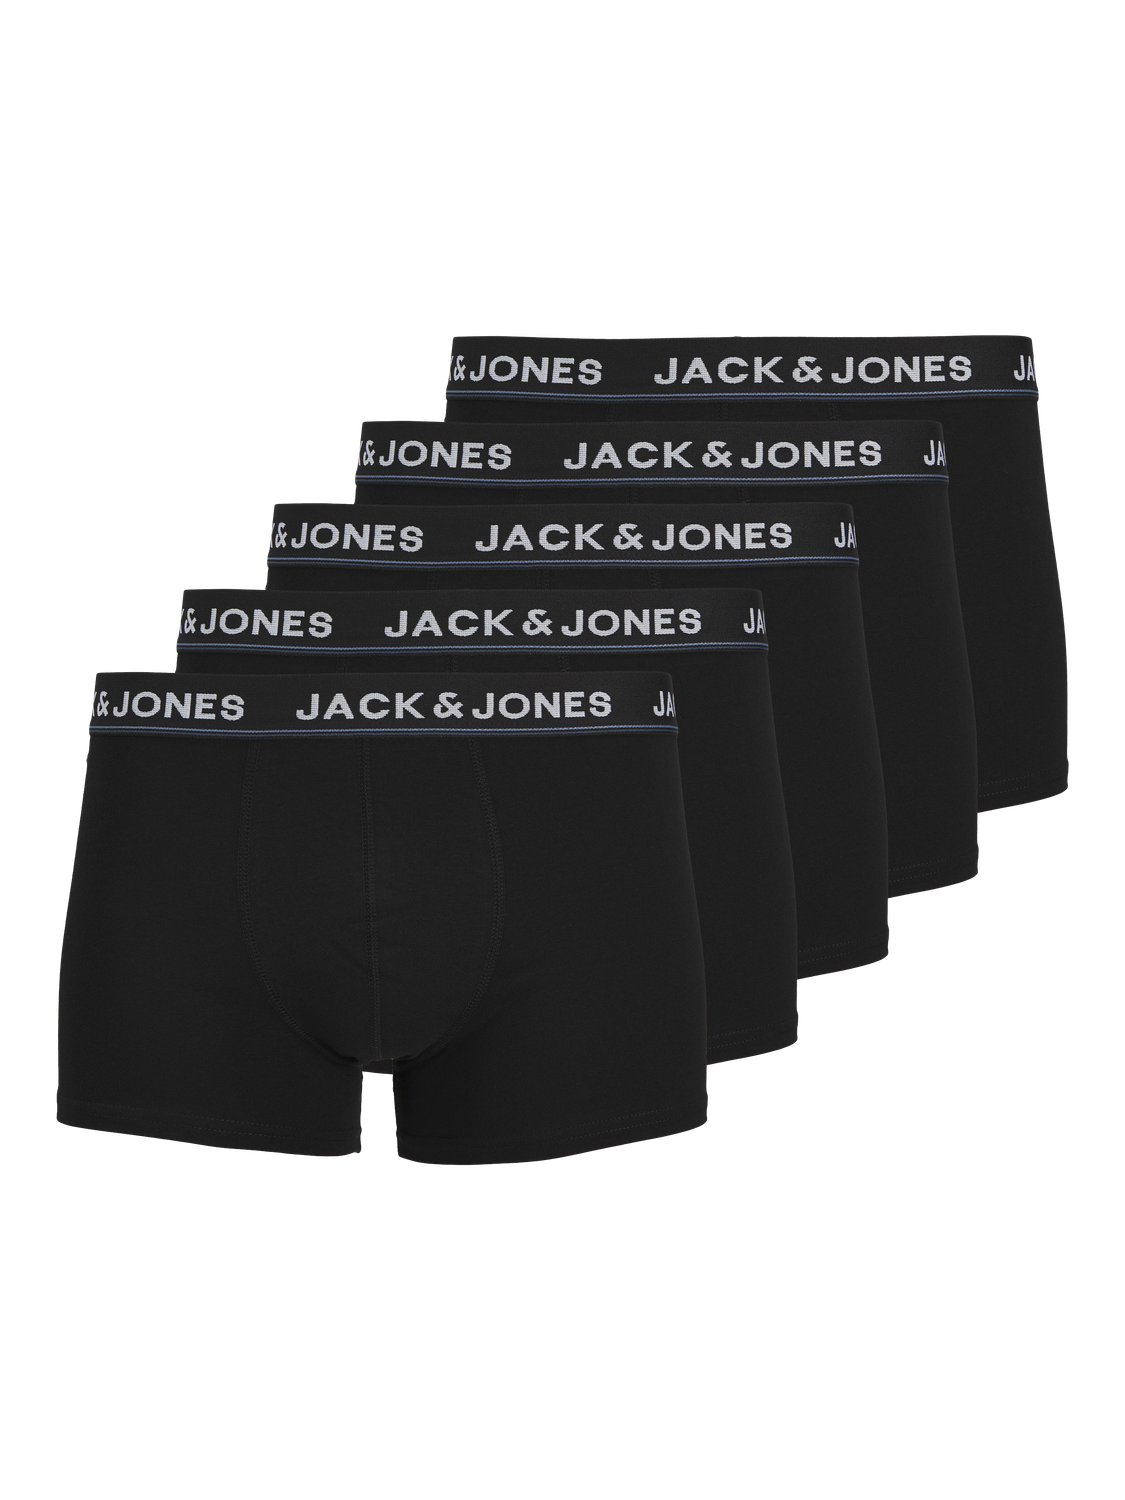 Jack & Jones 5-pack Trunks -Black - 12265503